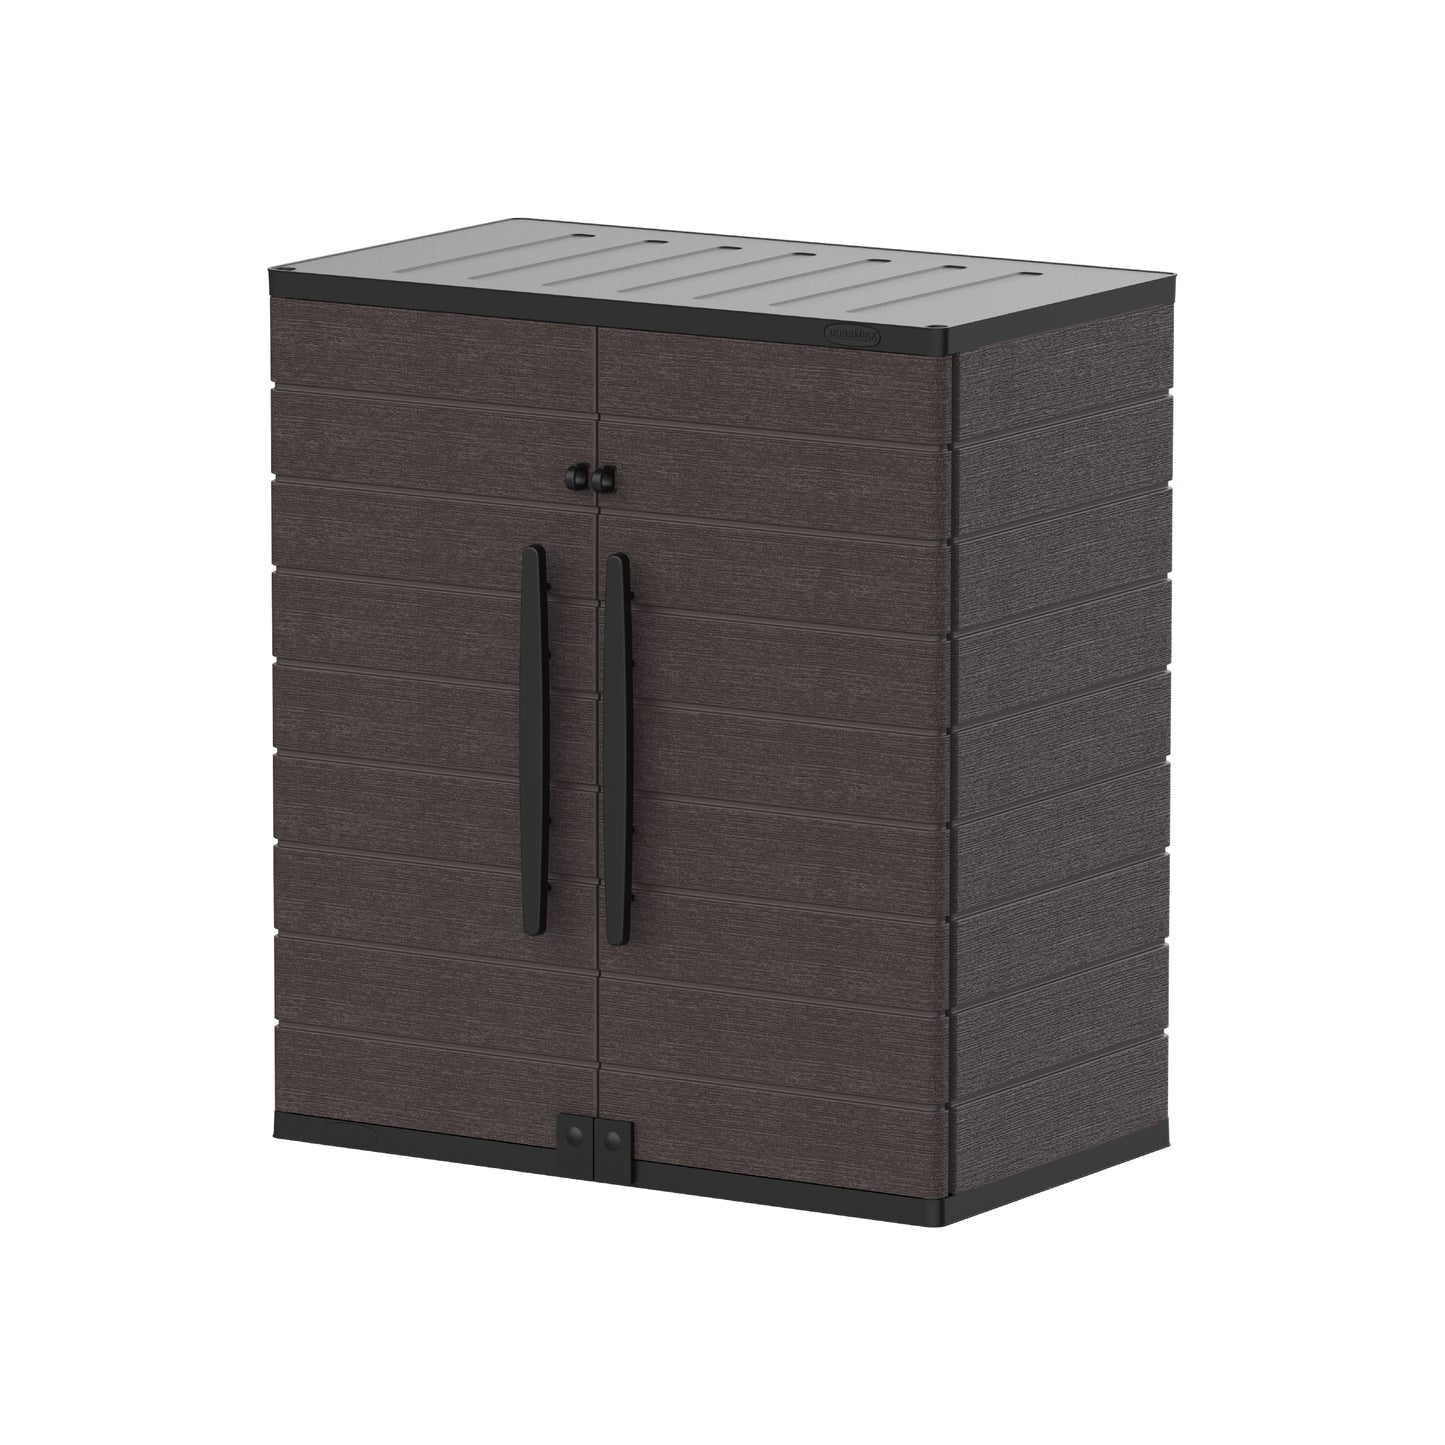 Duramax Cedargrain Gabinete de almacenamiento corto con 2 estantes ajustables-Marrón